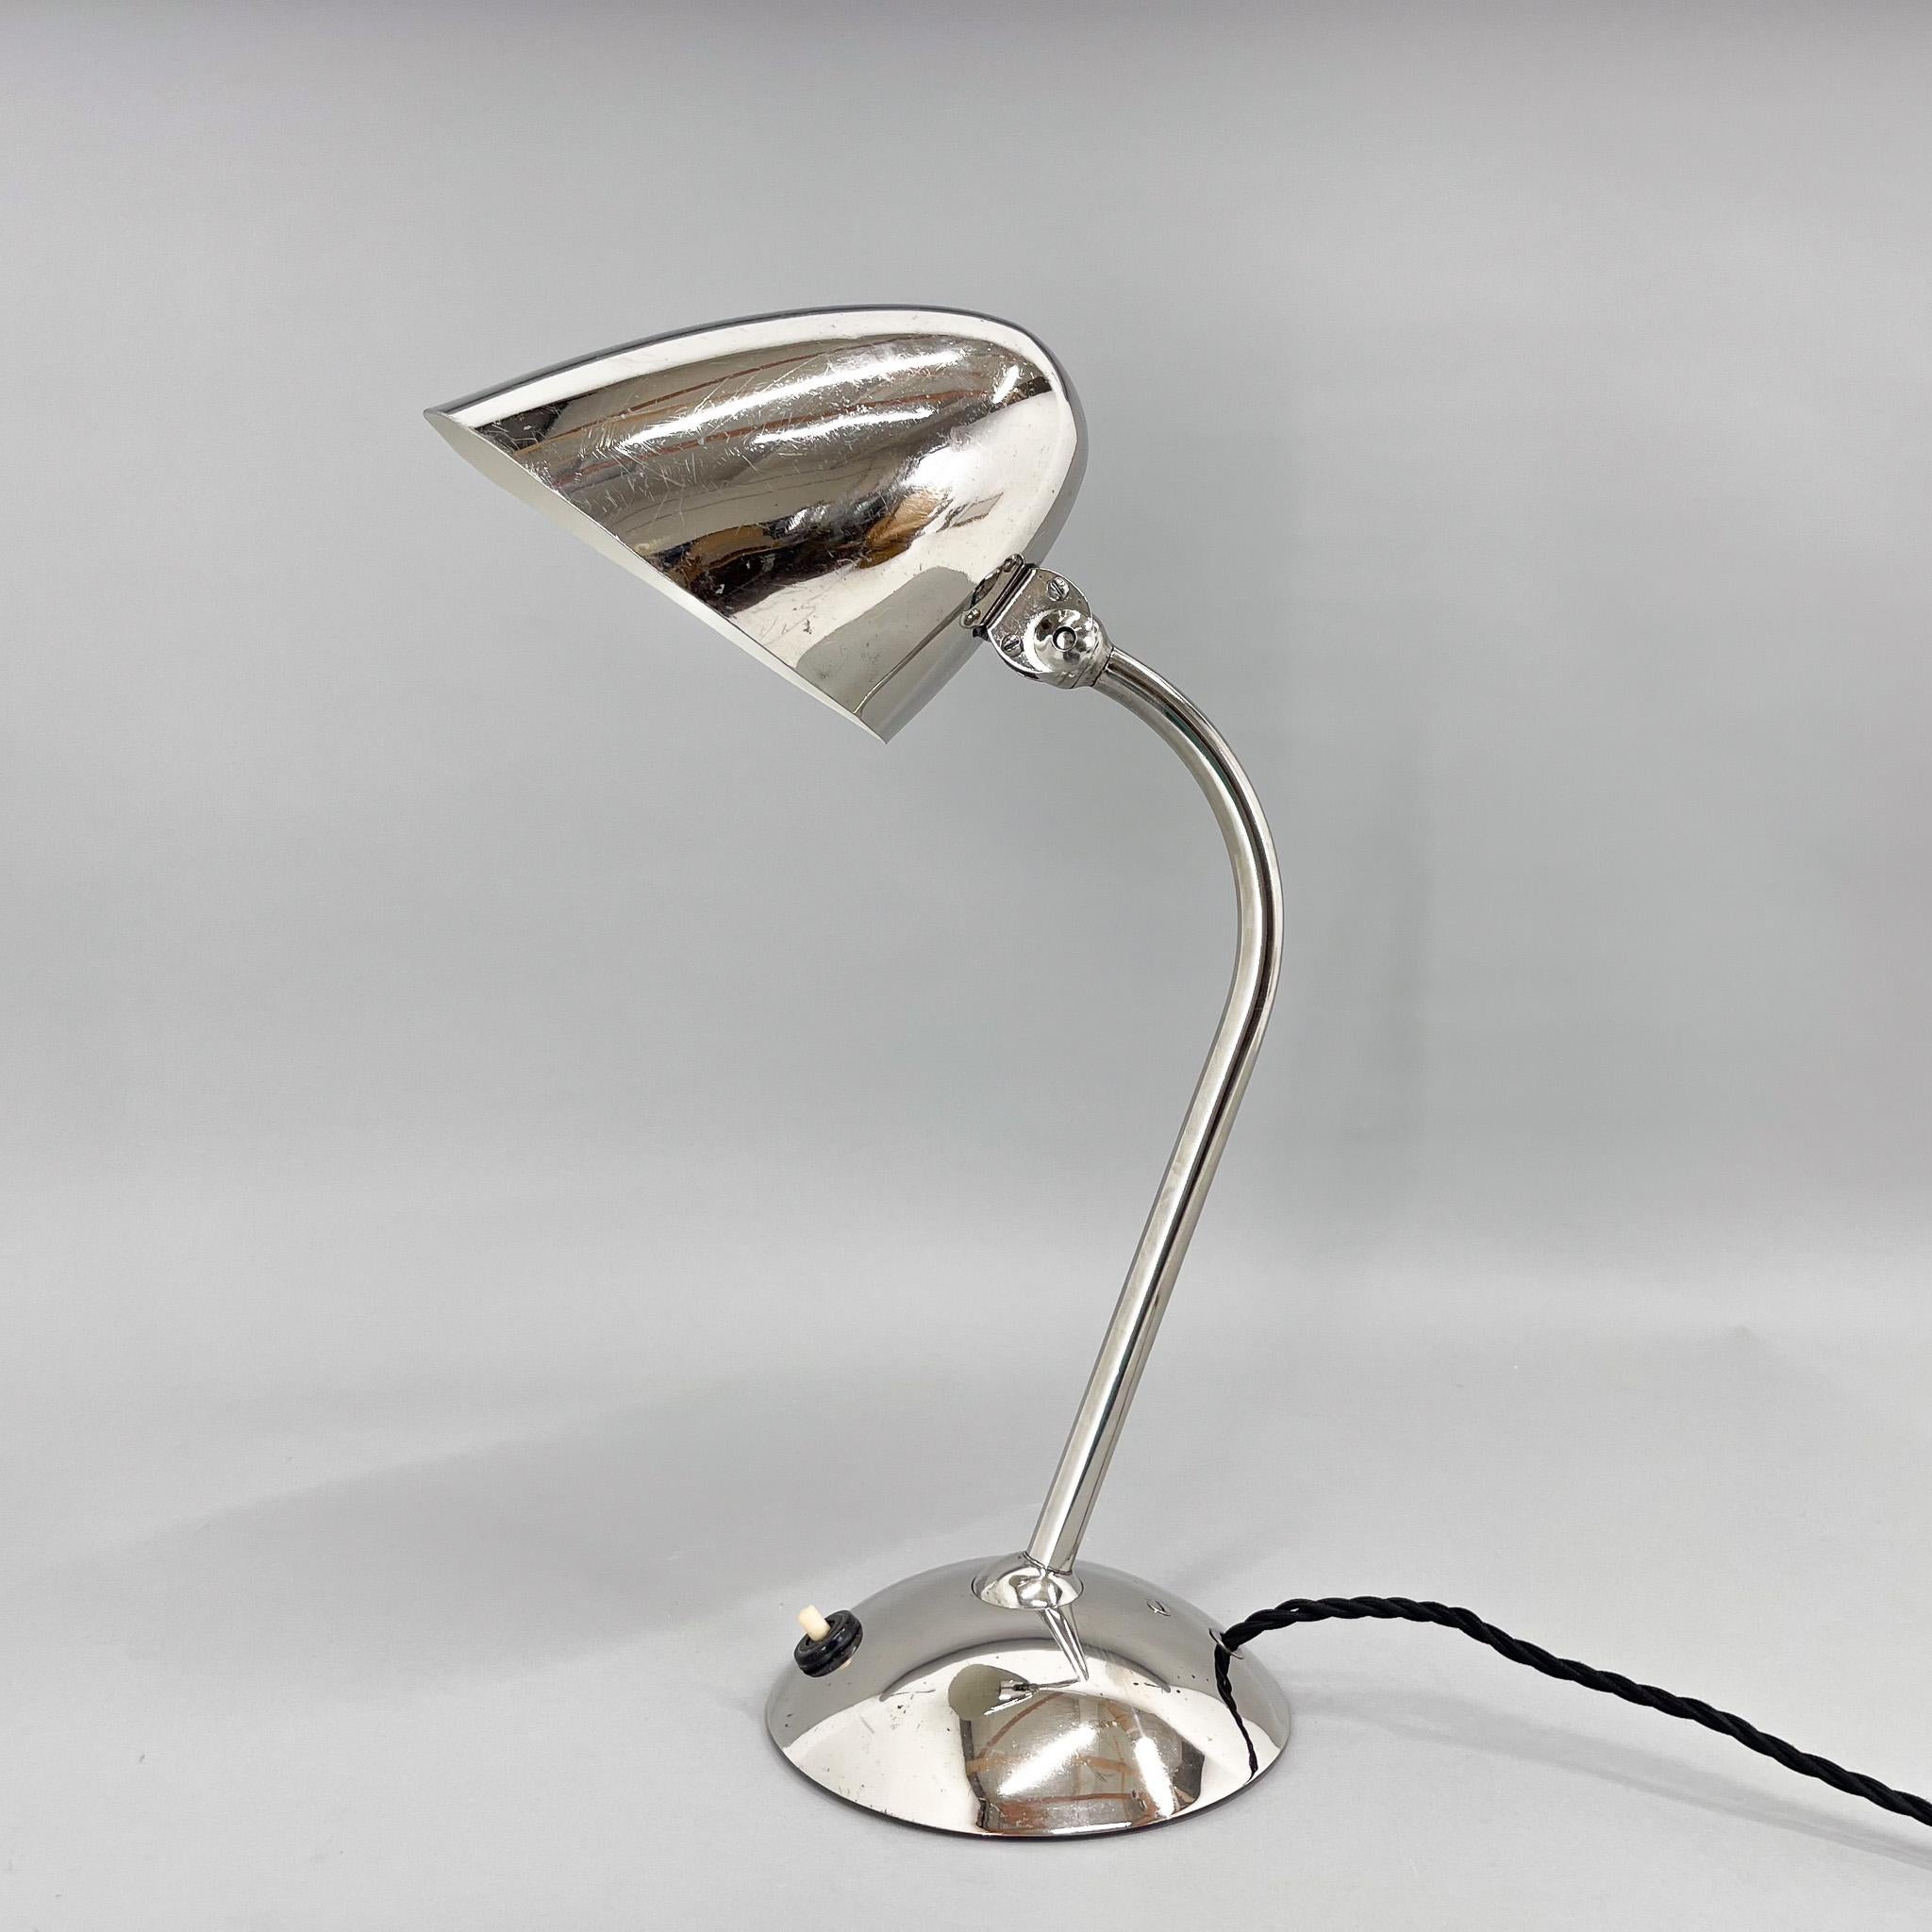 Ikonische Tischleuchte von Franta Anyz. Niickelbeschichtete Version.
Diese Lampe ist berühmt für ihre patentierten Anyz-Gelenke, die den Schirm so flexibel wie möglich machen. Gereinigt, poliert. Einige Kratzer auf der Oberfläche.
Neu